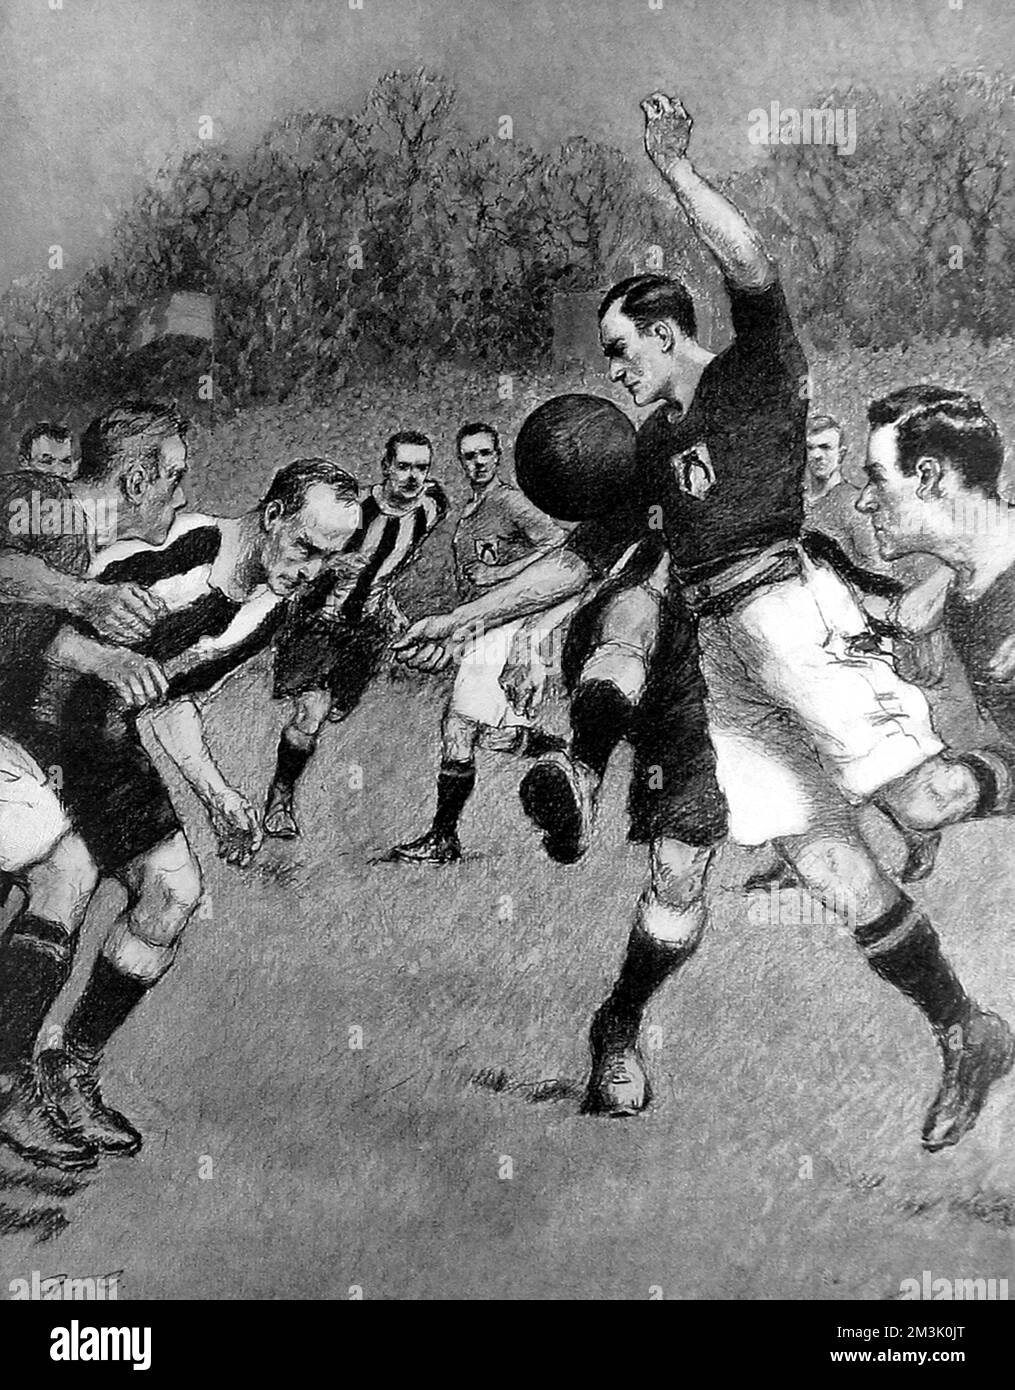 Finale zwischen Newcastle United und Barnsley, mit einem der Barnsley-Verteidiger (in dunklen Hemden), der den Ball hinunter kämpft; Crystal Palace Football Ground, 23.. April 1910. Dieses Spiel endete mit einem Unentschieden von 1-1. 5 Tage später wurde in Liverpool ein erneutes Spiel gespielt, bei dem Newcastle 2-0 gewonnen hat. 1910 Stockfoto